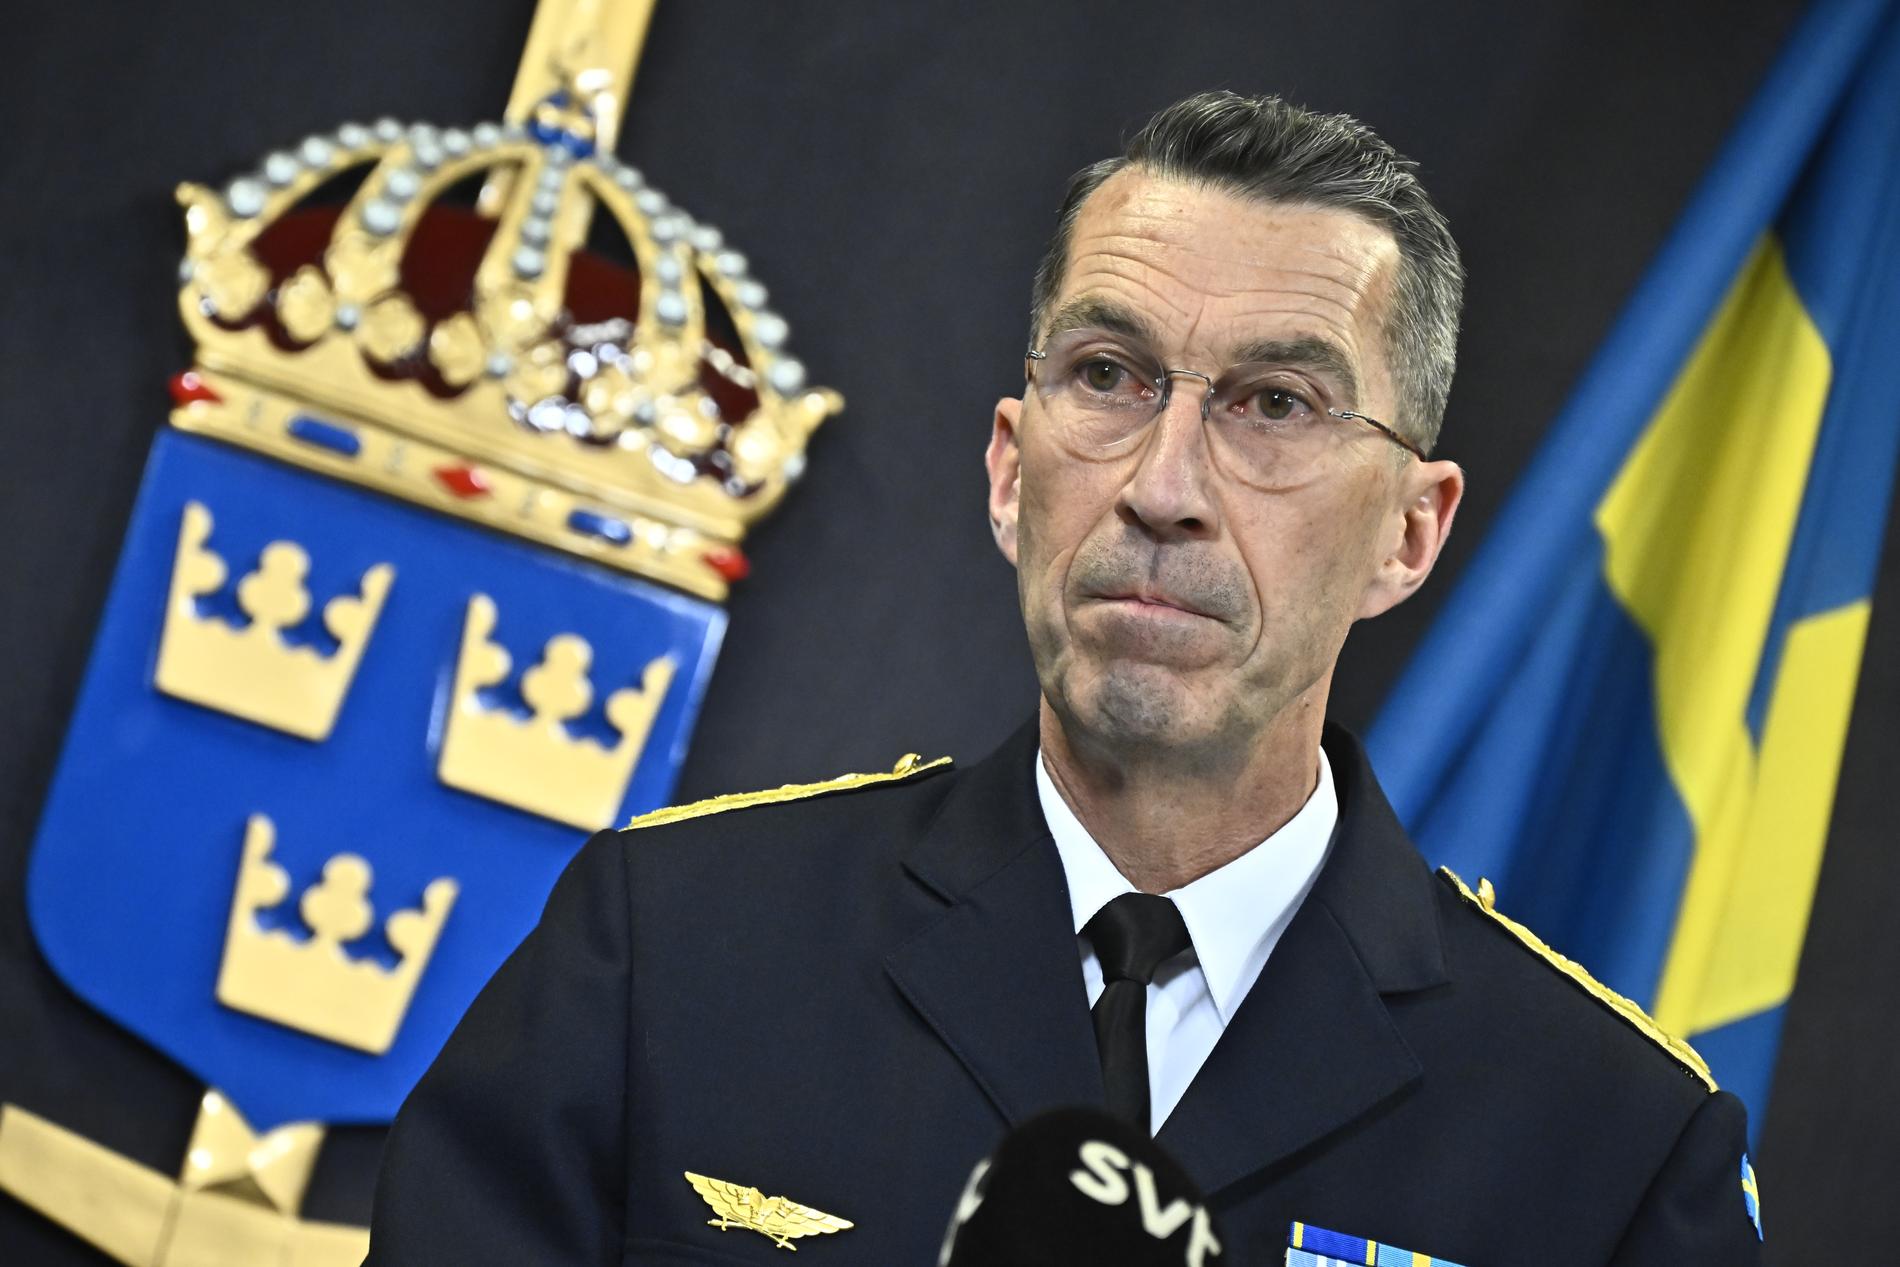 Försvarsmaktens överbefälhavare Micael Bydén håller pressträff med anledning av Nato-beskedet.